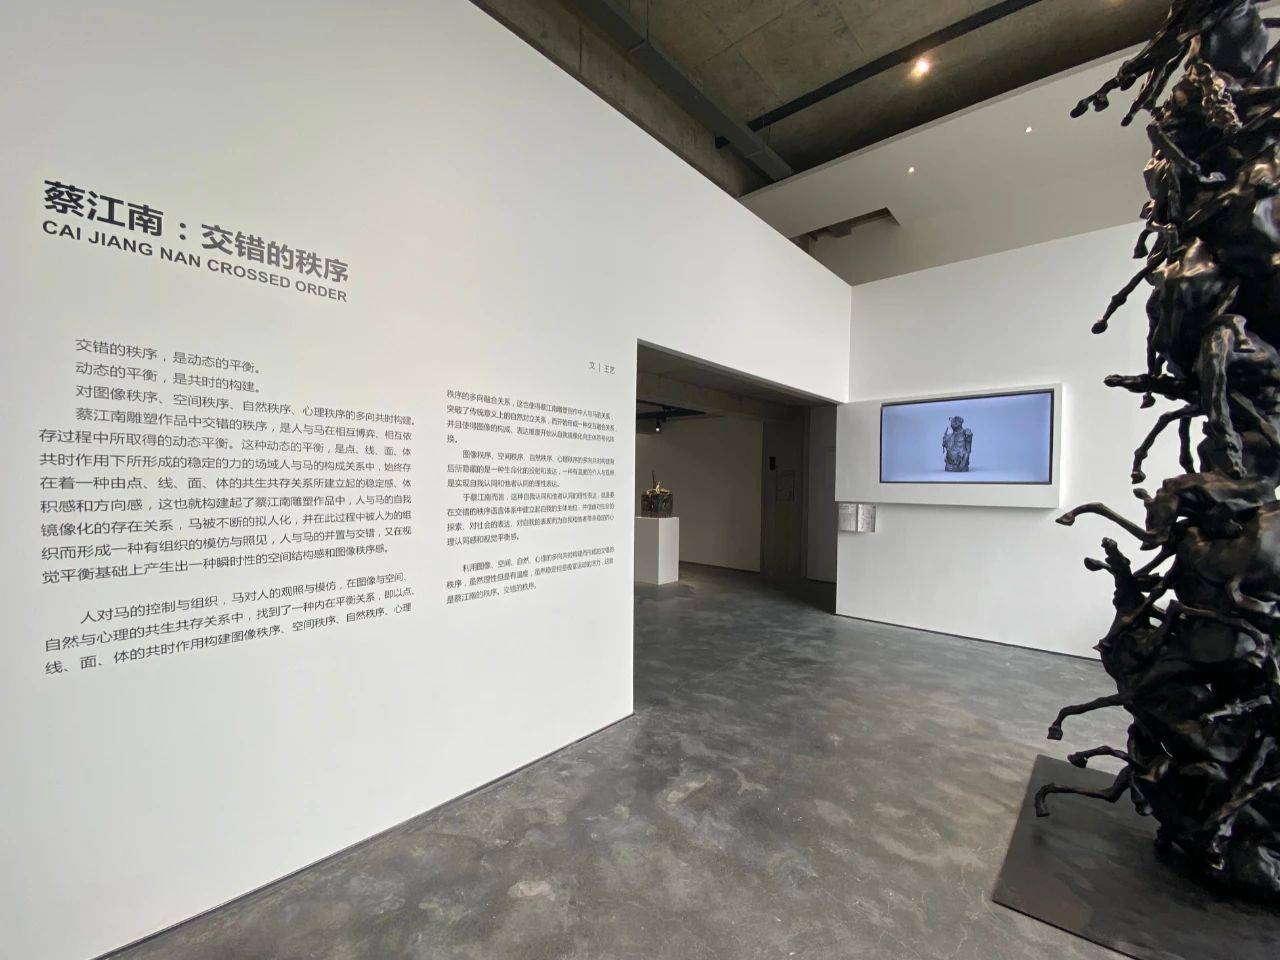 厦门103研究所落成，首展呈现蔡江南的“交错的秩序”
                
                 